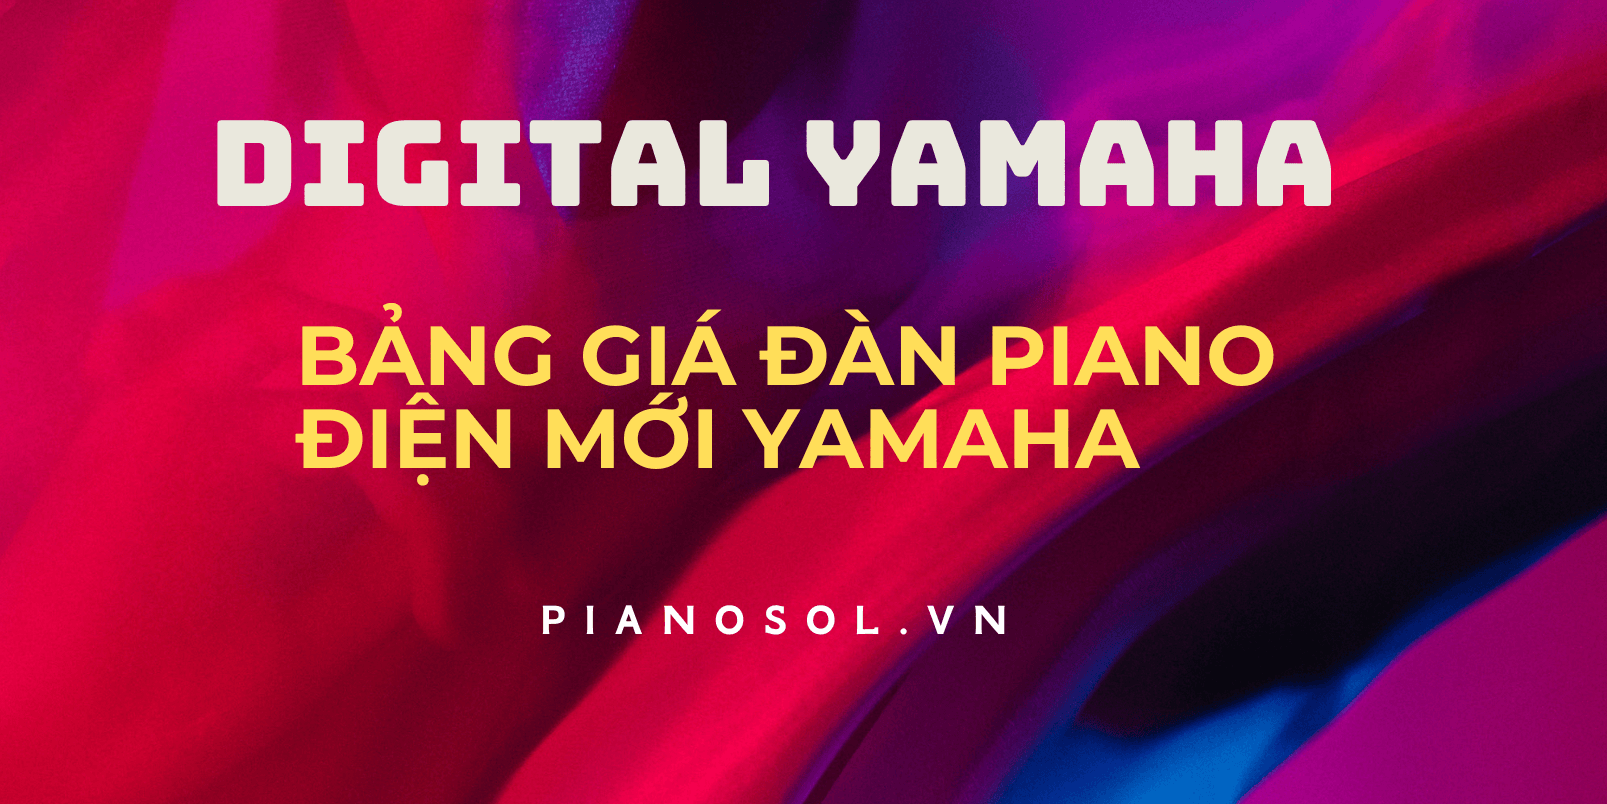 Giá đàn piano điện mới Yamaha